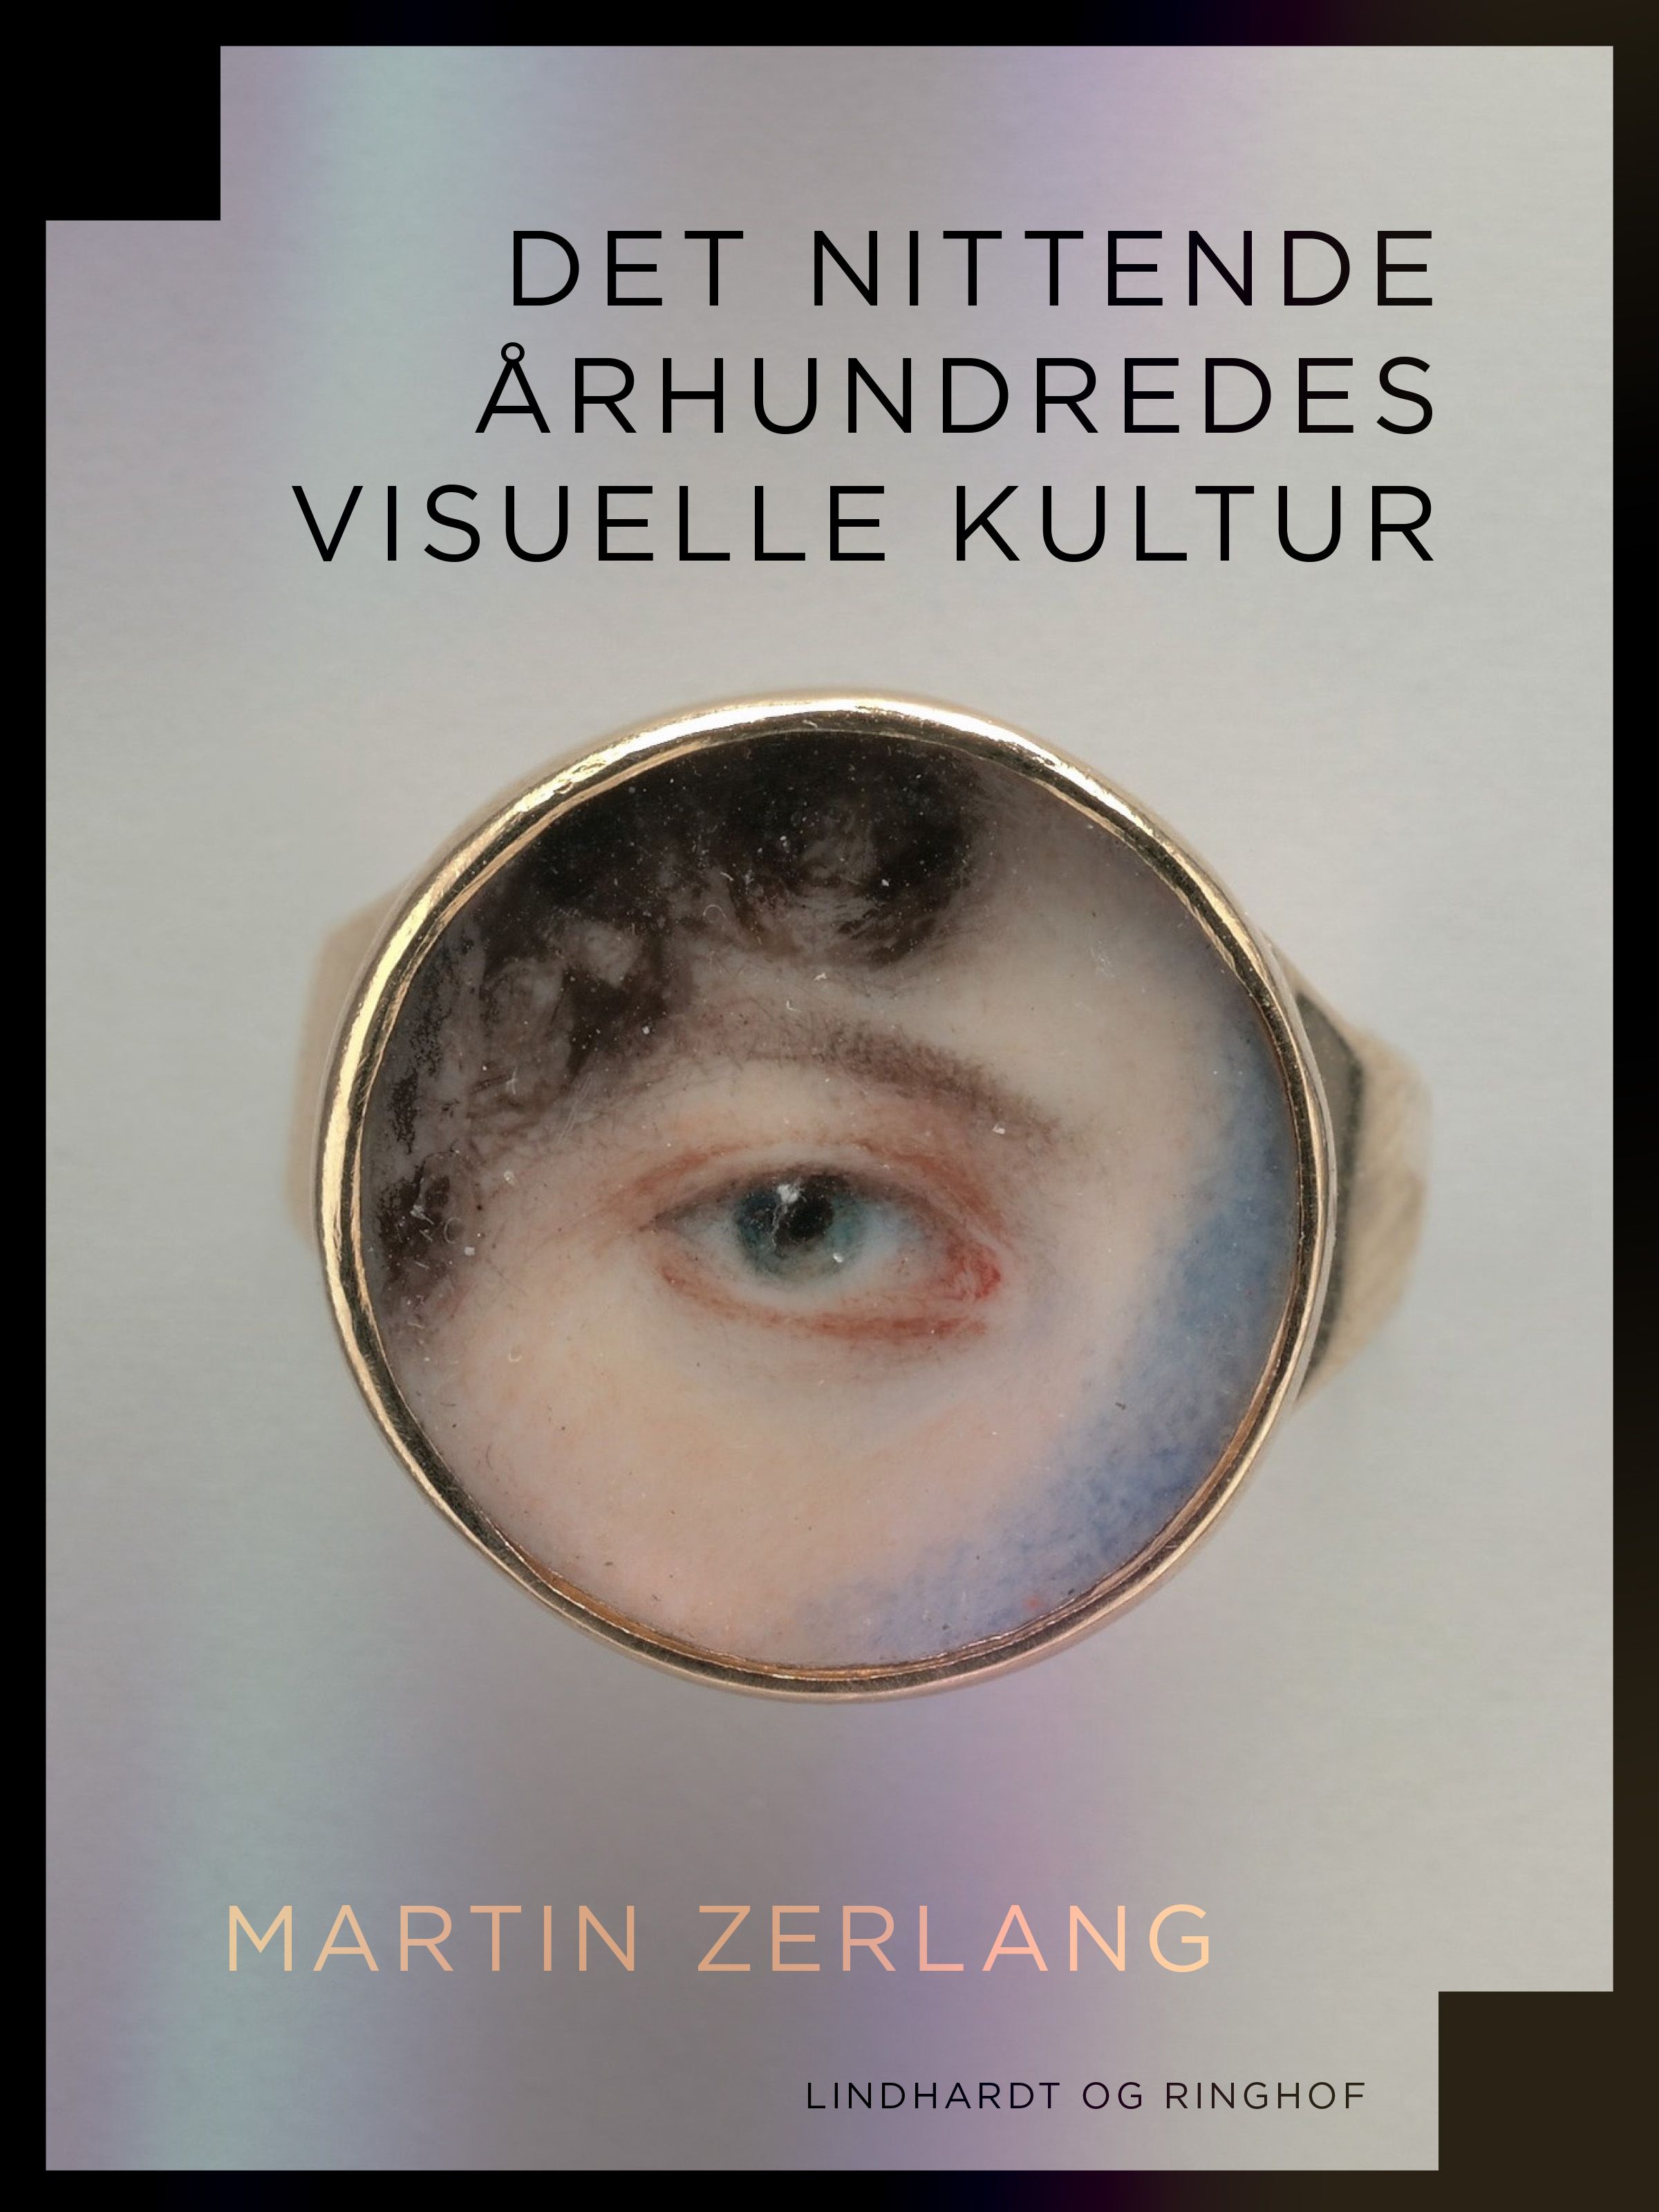 Det nittende århundredes visuelle kultur, e-bok av Martin Zerlang